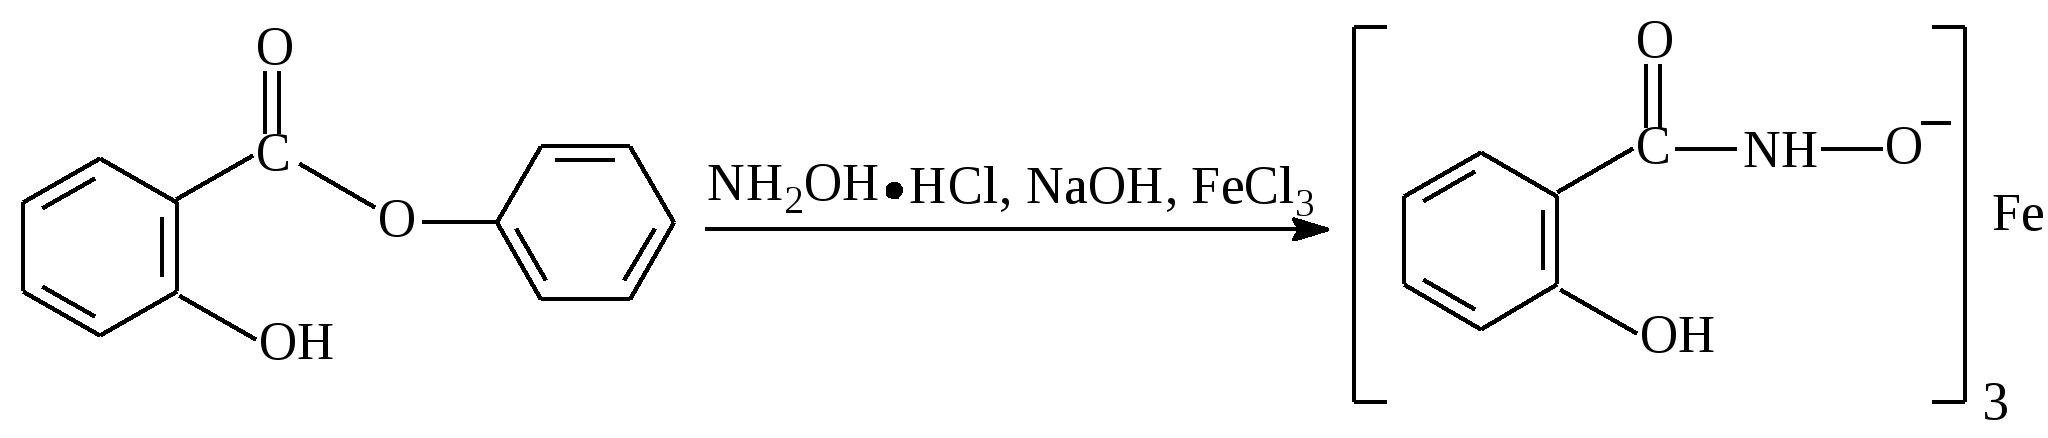 Бензойная кислота этиленгликоль. Аминобензойная кислота NAOH. П-аминобензойная кислота формула. Диссоциация бензойной кислоты. Метиловый эфир 4 аминобензойной кислоты.